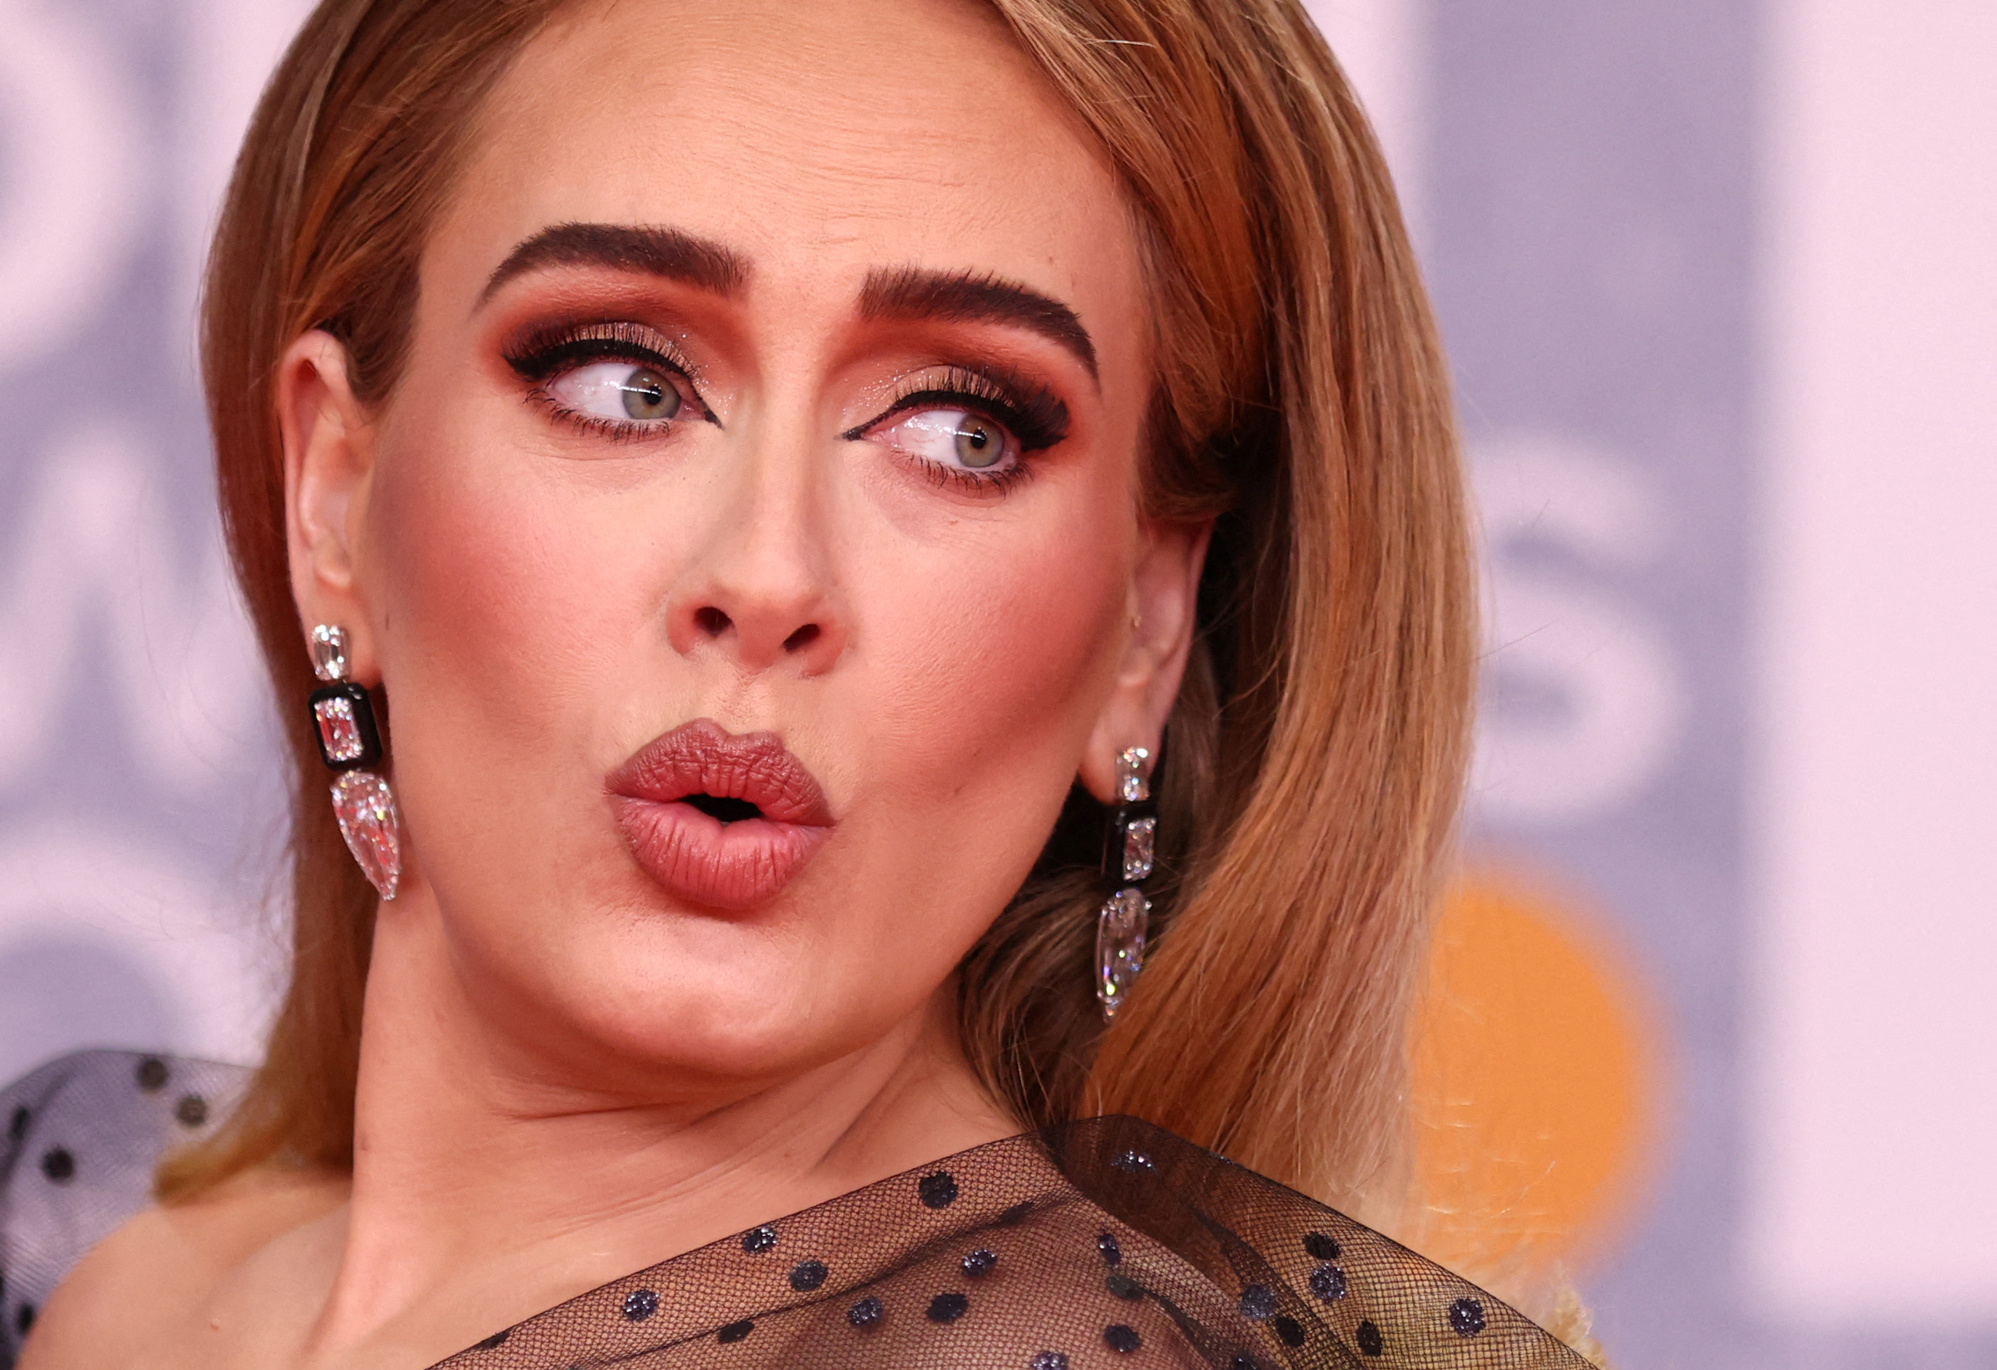 Recientemente Adele retomó su carrera y ha impresionado a su público con su radical cambio de imagen. (Foto: REUTERS/Tom Nicholson/File Photo)